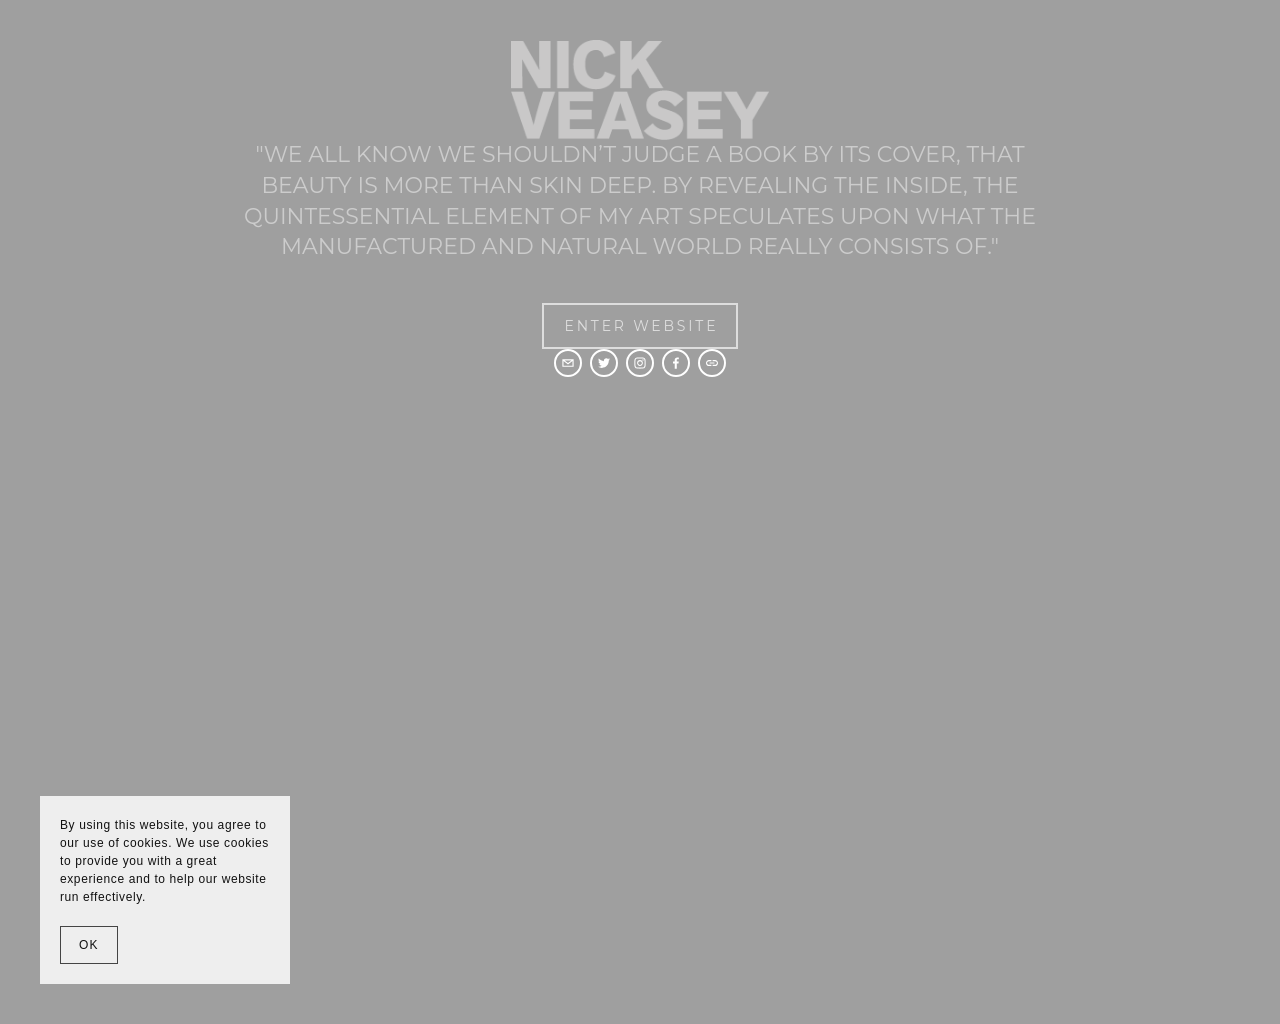 nickveasey.com